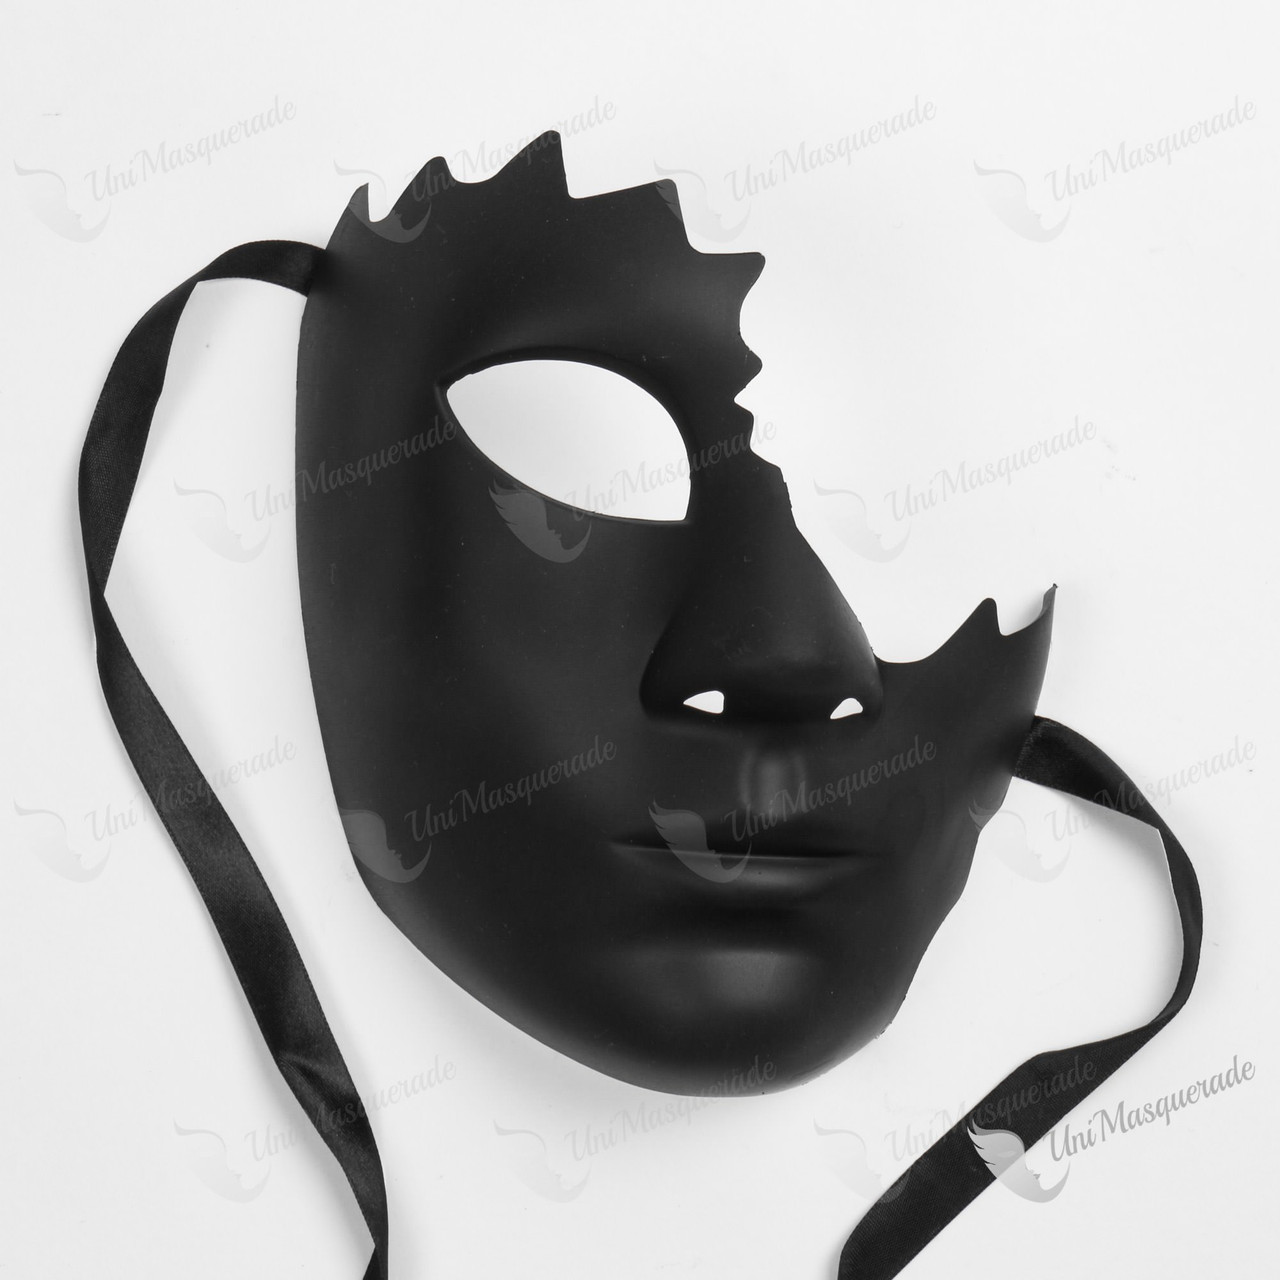 Painted Design Venetian Half Mask